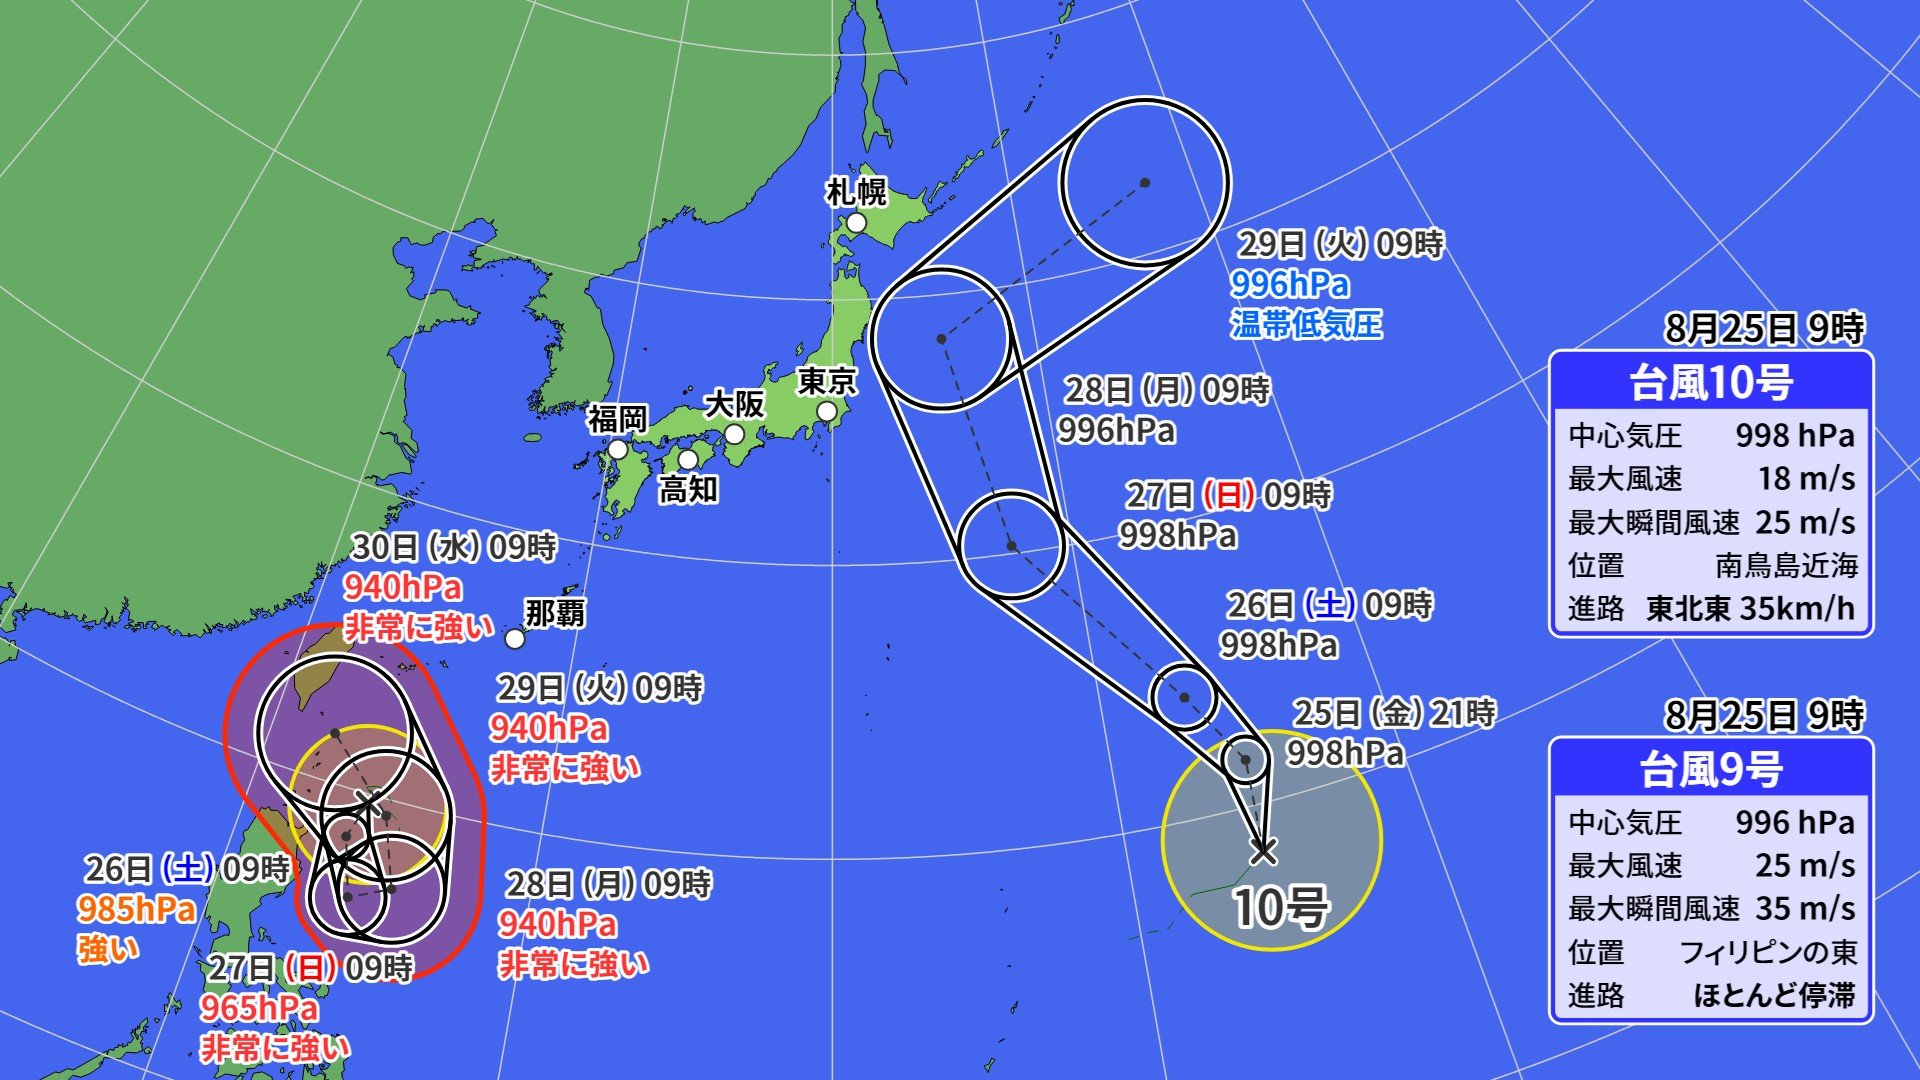 台風情報・台風進路】台風9号に続いて台風10号も発生 10号が先に日本に ...